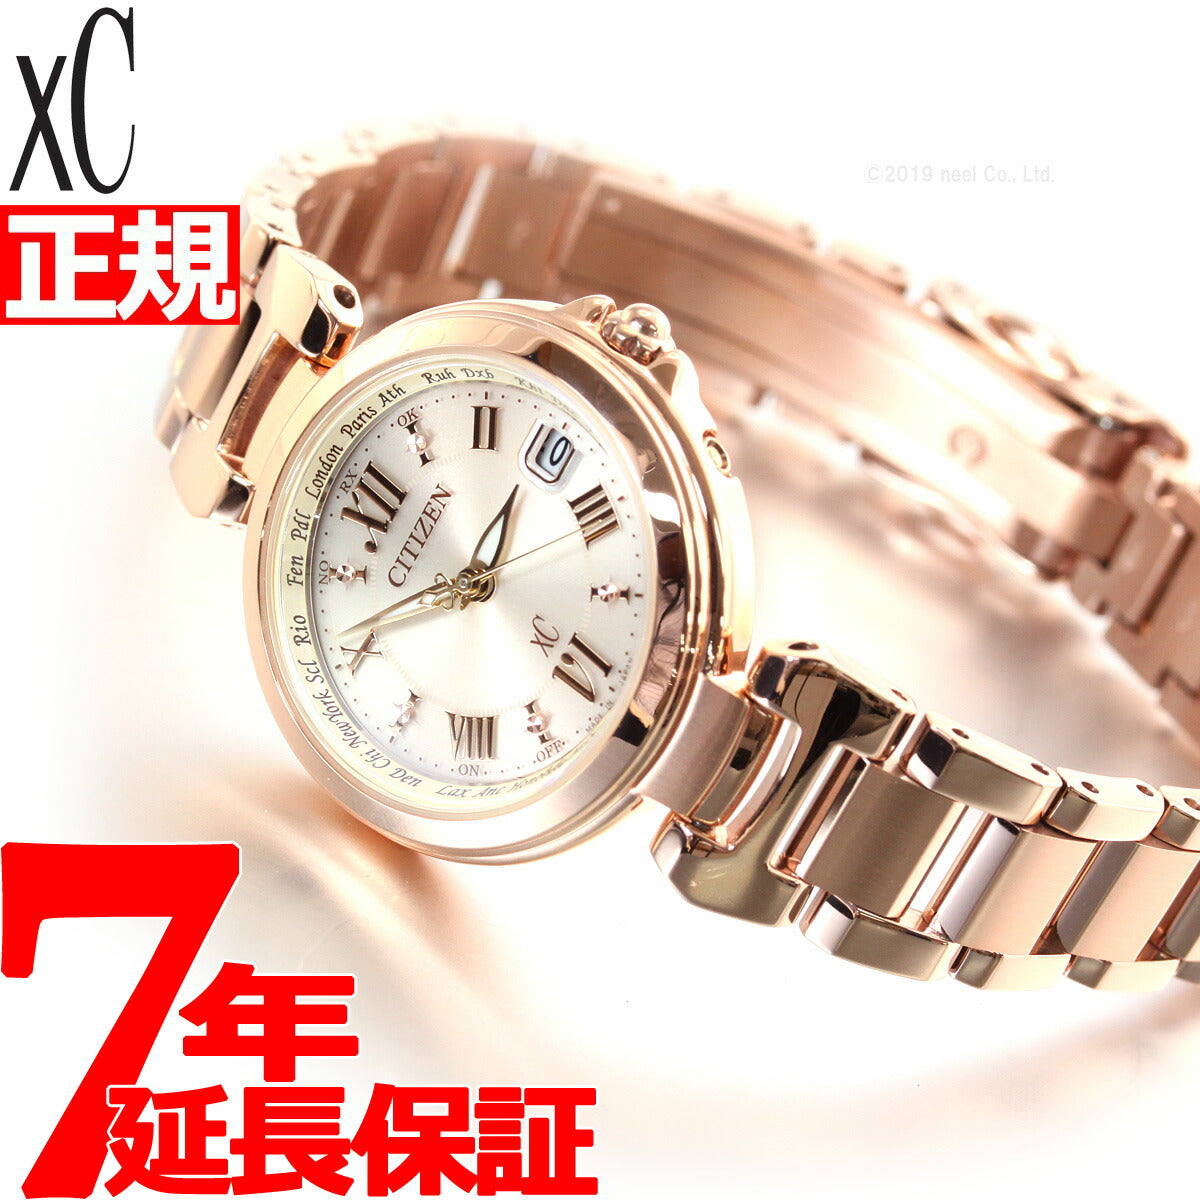 最大約185cmバンド幅【新品】シチズン CITIZEN 腕時計 レディース EC1032-54X クロスシー xC エコ・ドライブ電波（H240） ピンクxピンクゴールド アナログ表示